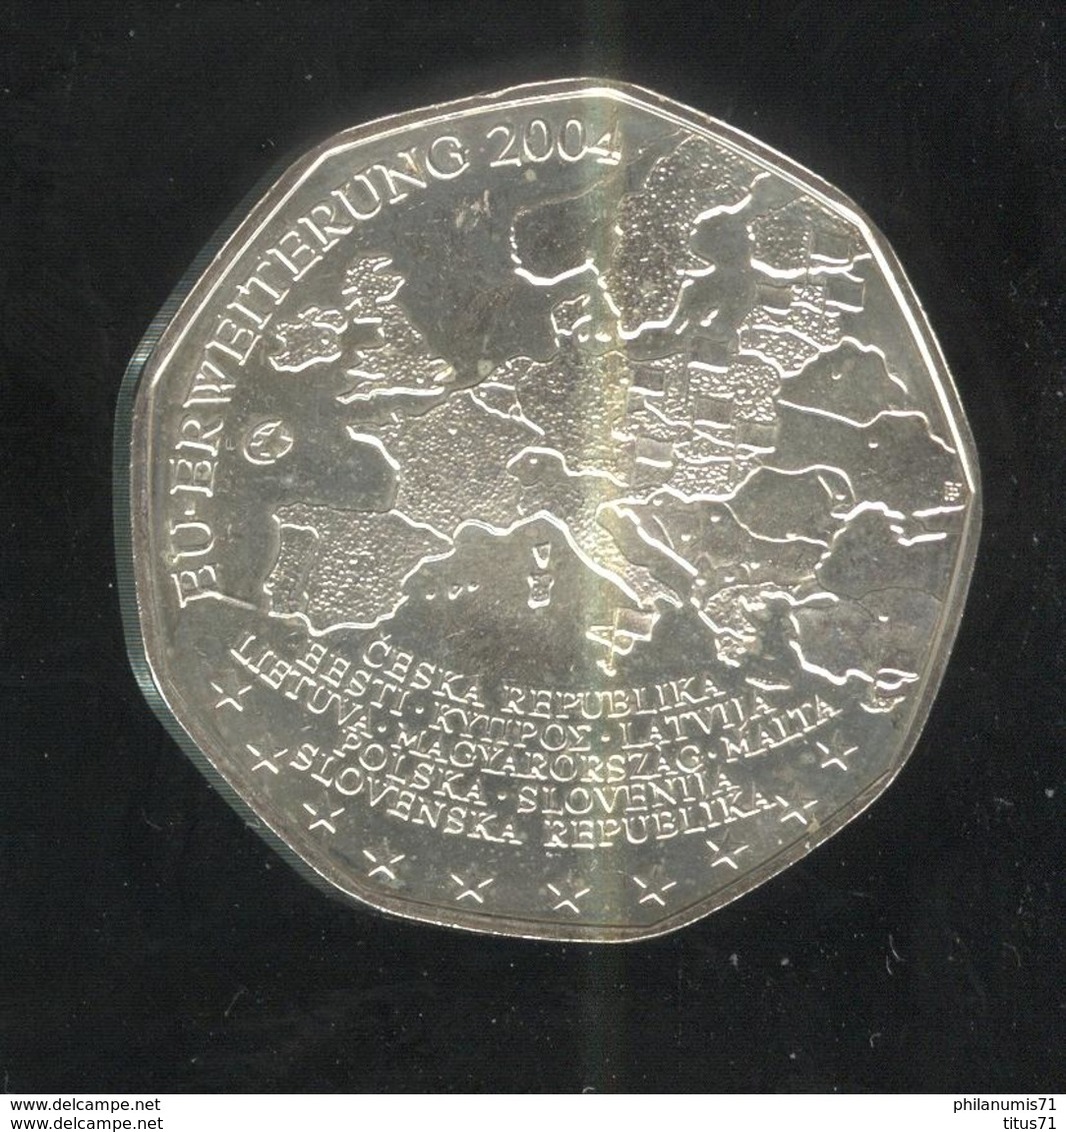 5 Euros Autriche Argent 2004 - Élargissement De L'Union Européenne De 2004 - SUP - Oesterreich